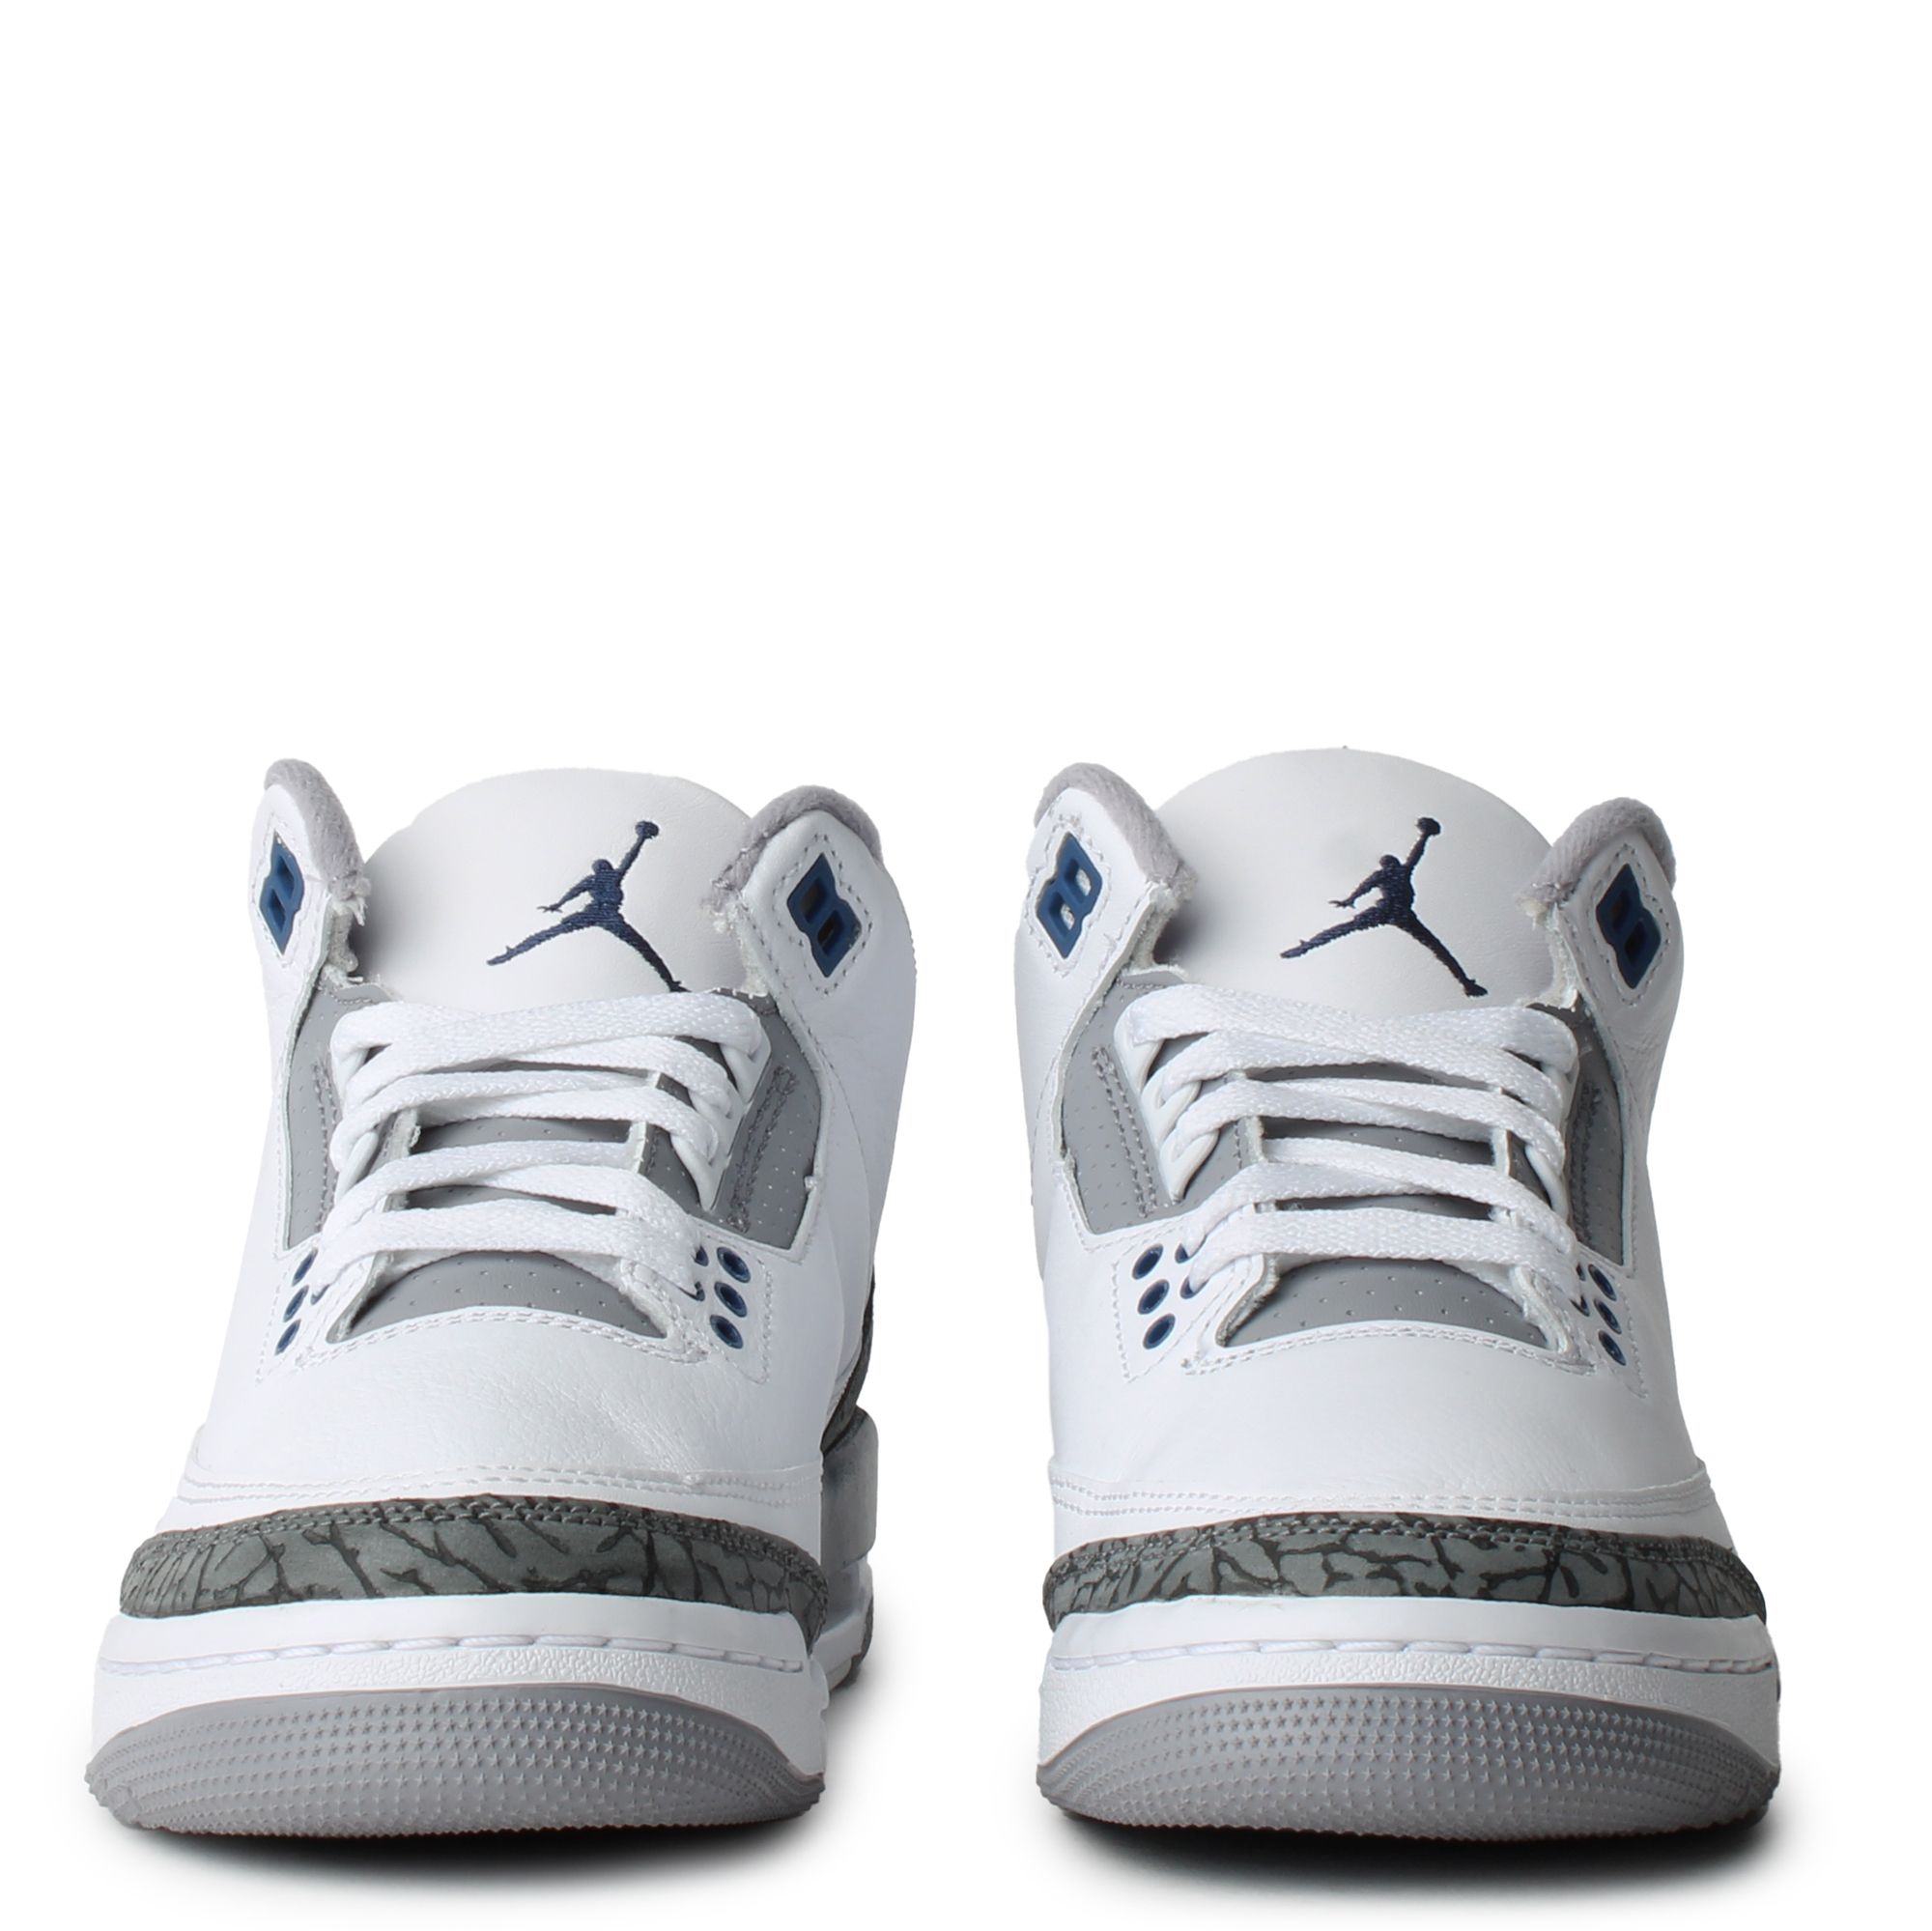  Nike Men's Air Jordan 3 Retro Racer Blue, White/Black/Cement  Grey/Racer, 7